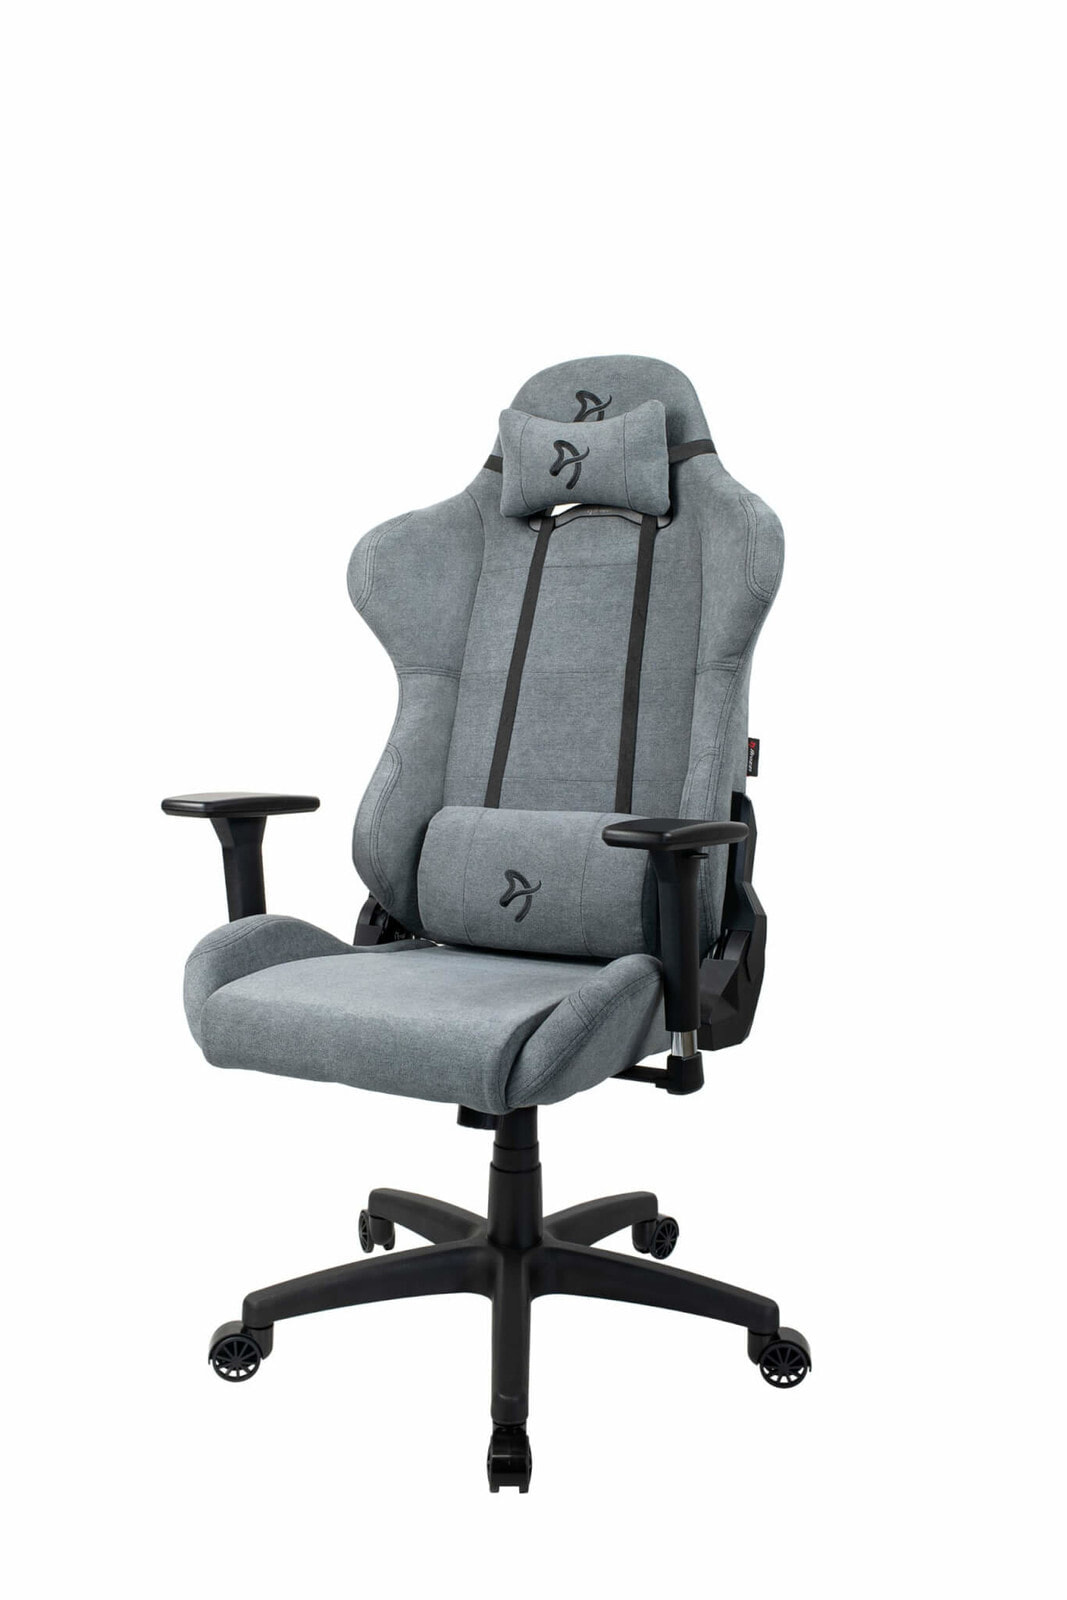 Arozzi Torretta -SFB-ASH геймерское кресло Игровое кресло для ПК Сиденье с мягкой обивкой Черный, Серый TORRETTA-SFB-ASH